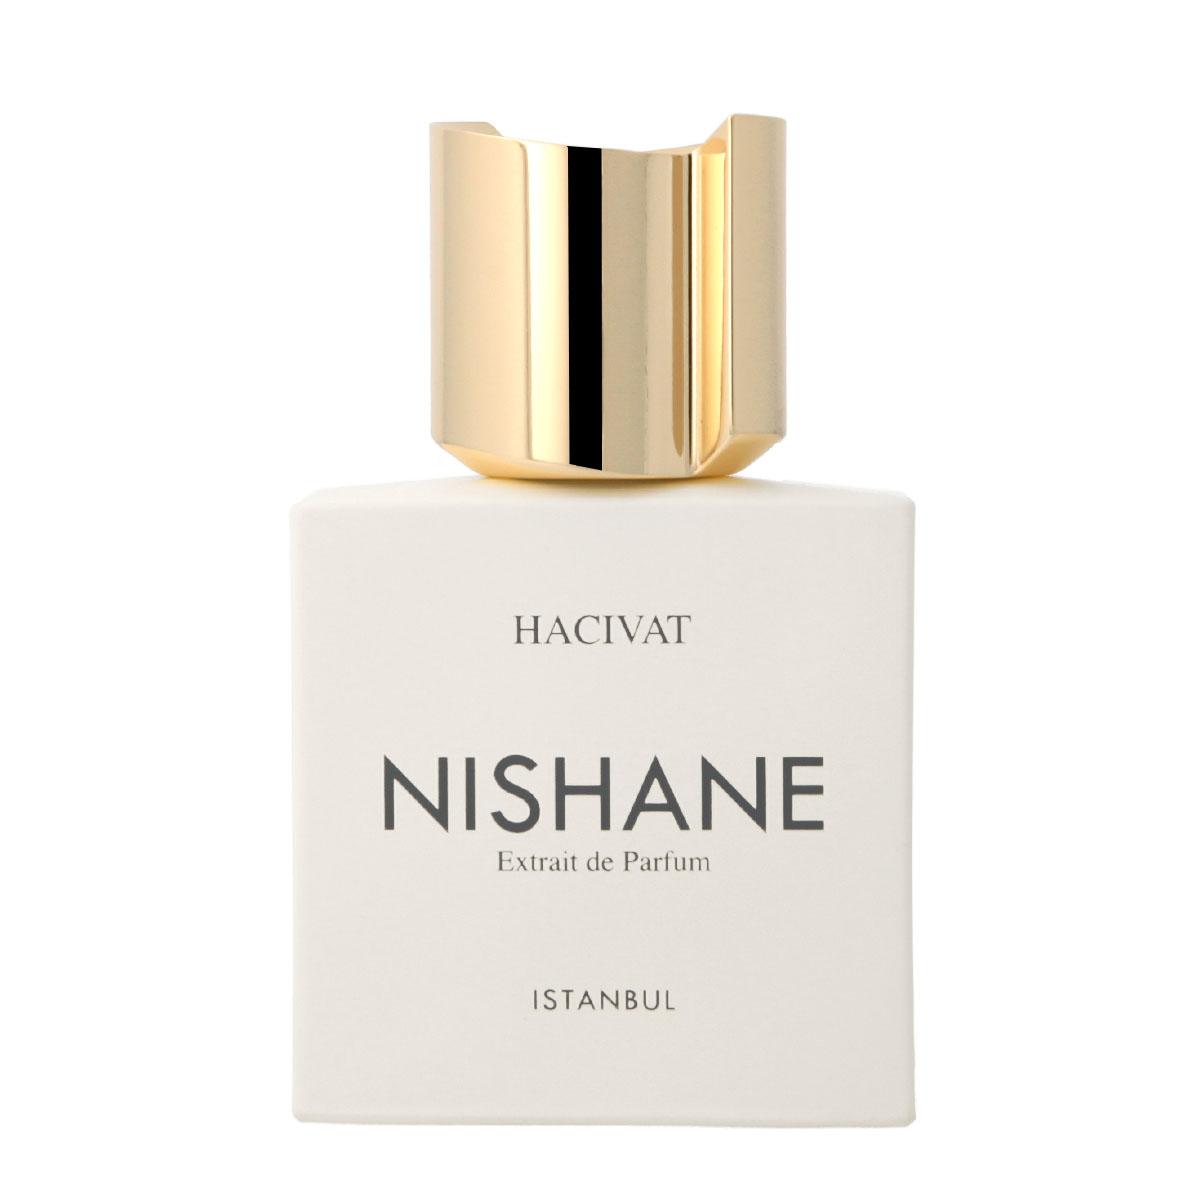 Nishane Hacivat Extrait de Parfum unisex 100 ml